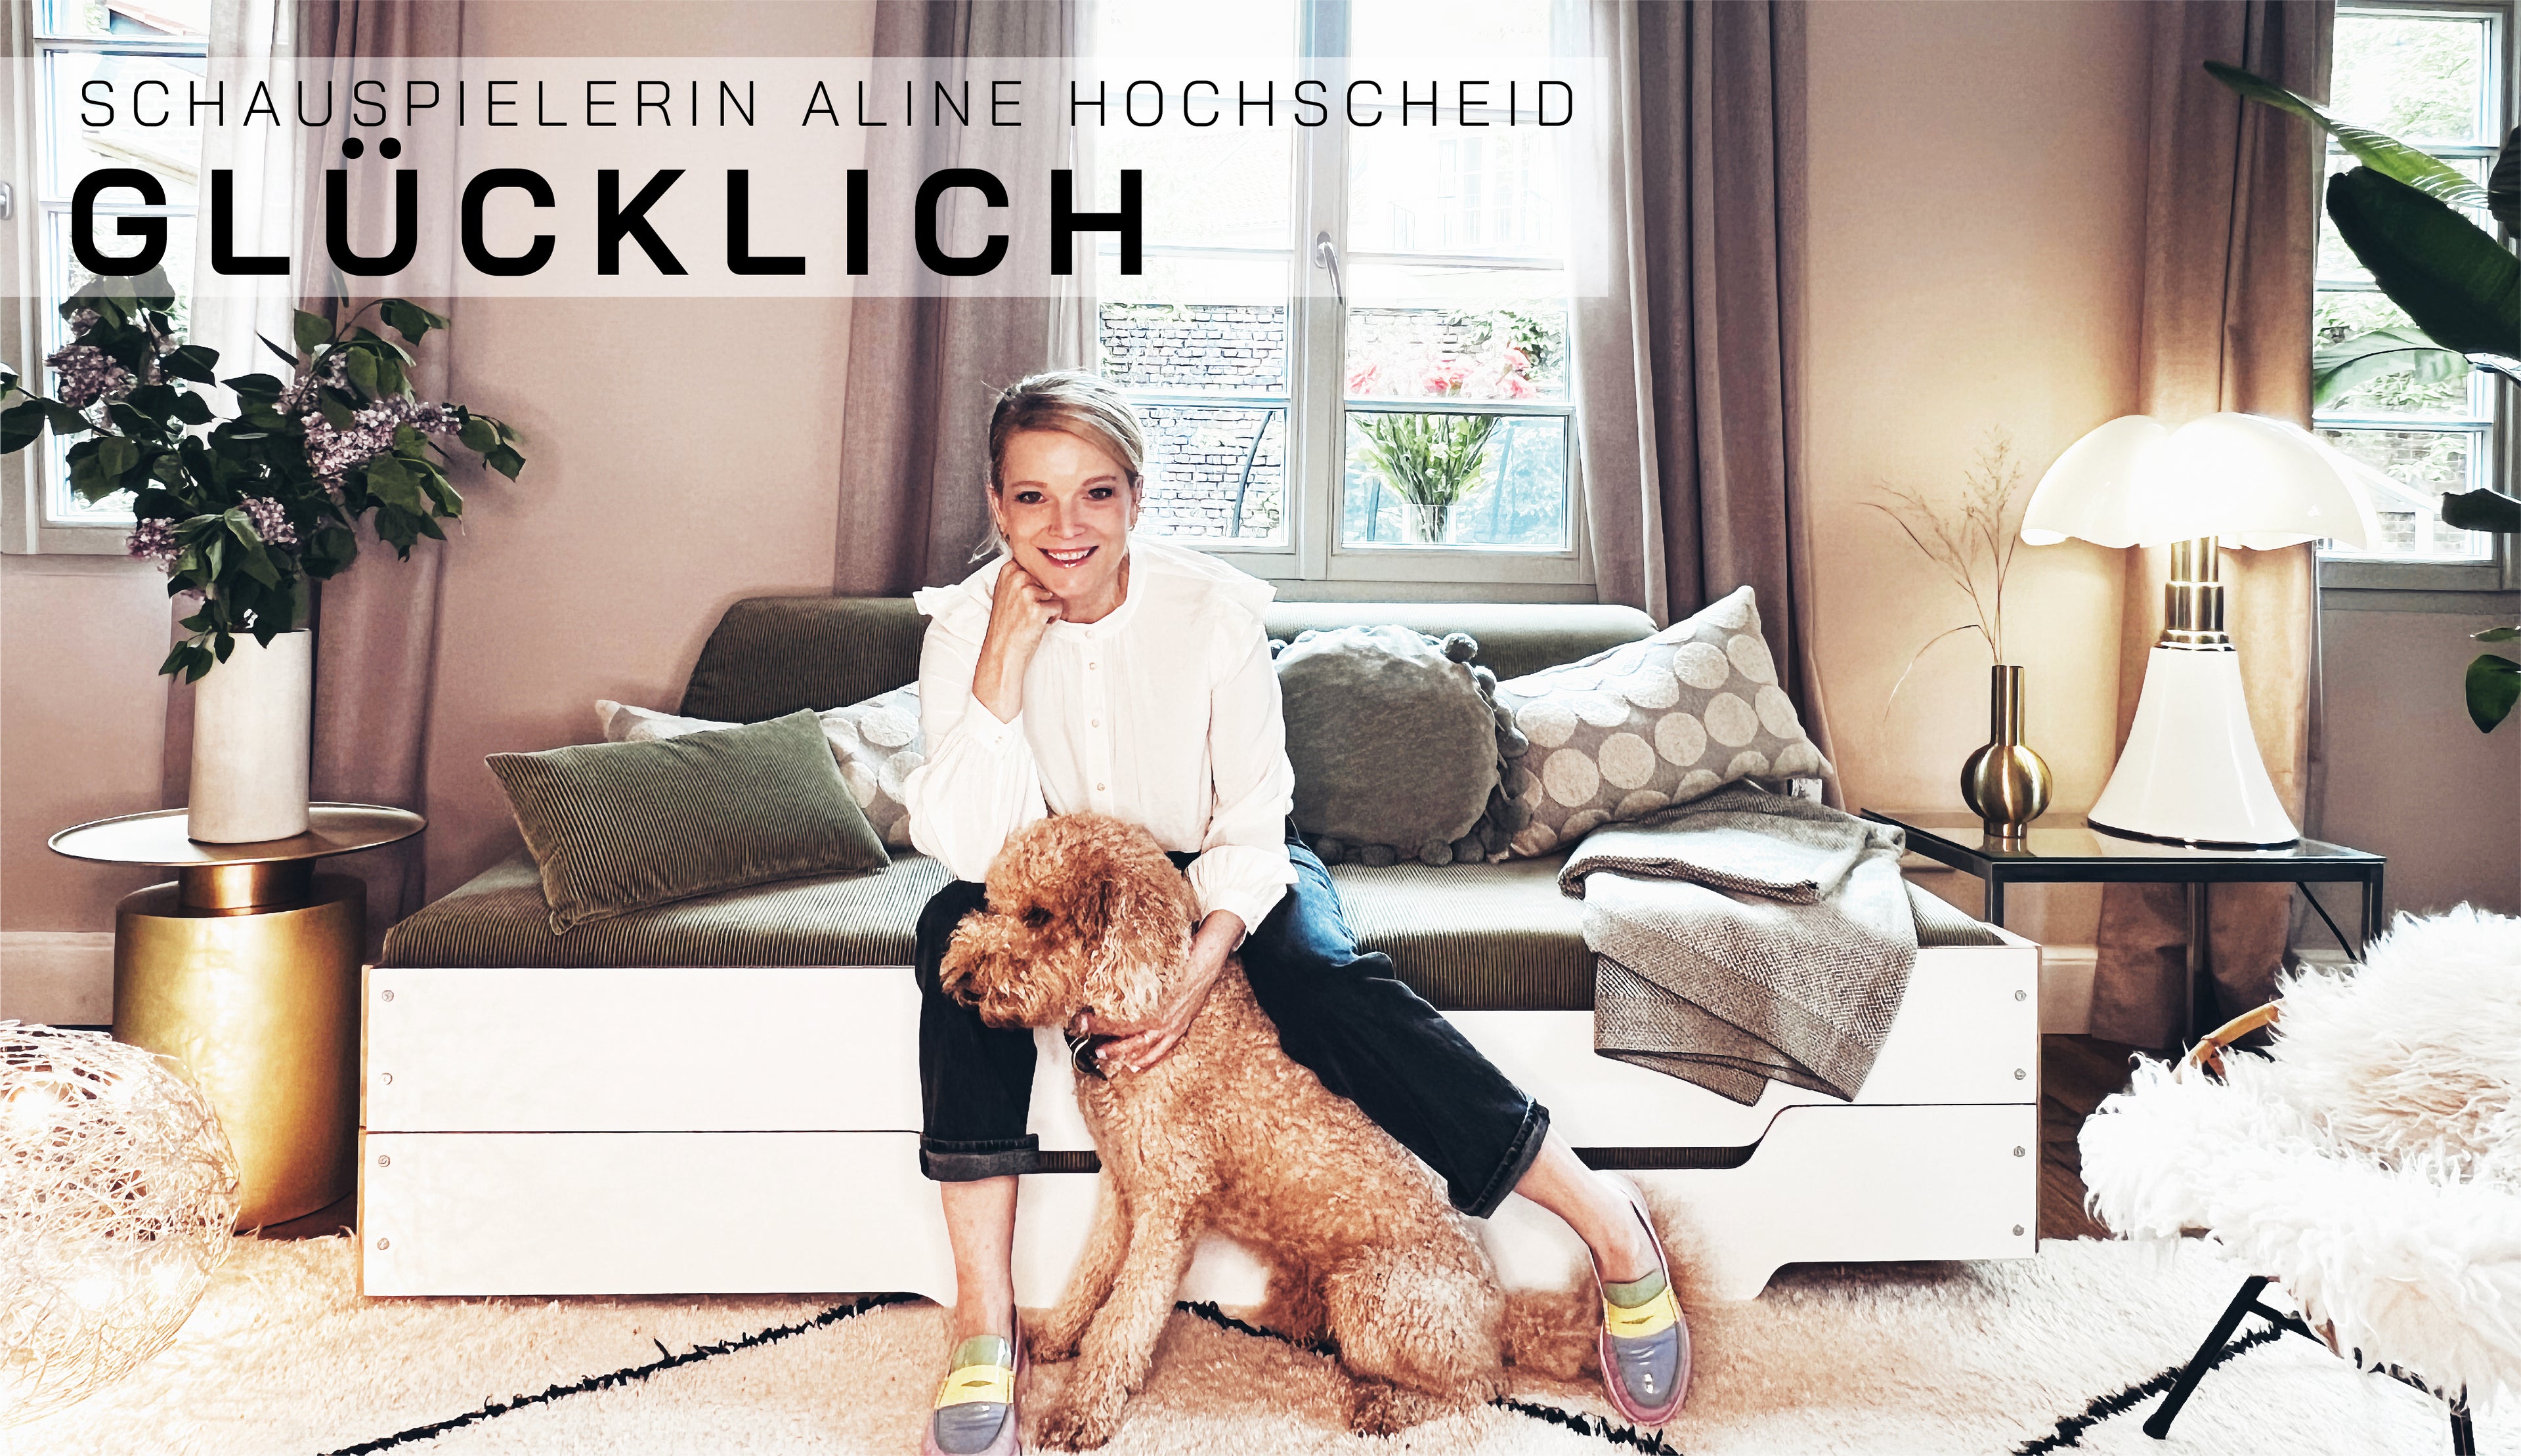 Video laden: Schauspielerin Aline Hochscheid ist glücklich mit der Stapelliege